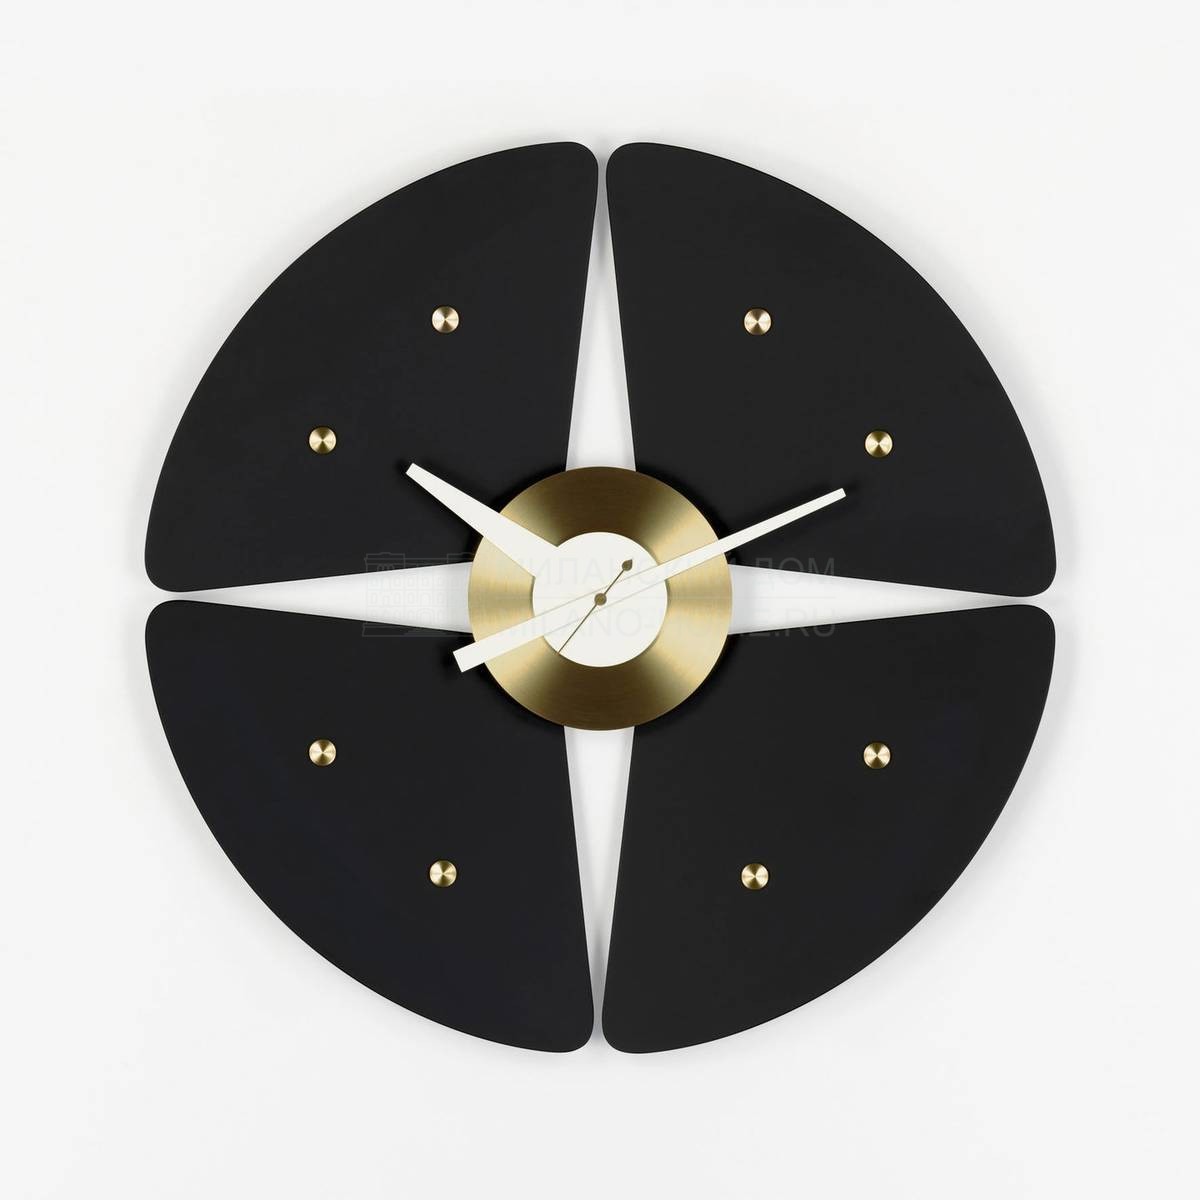 Настенные часы Petal Clock из Швейцарии фабрики VITRA